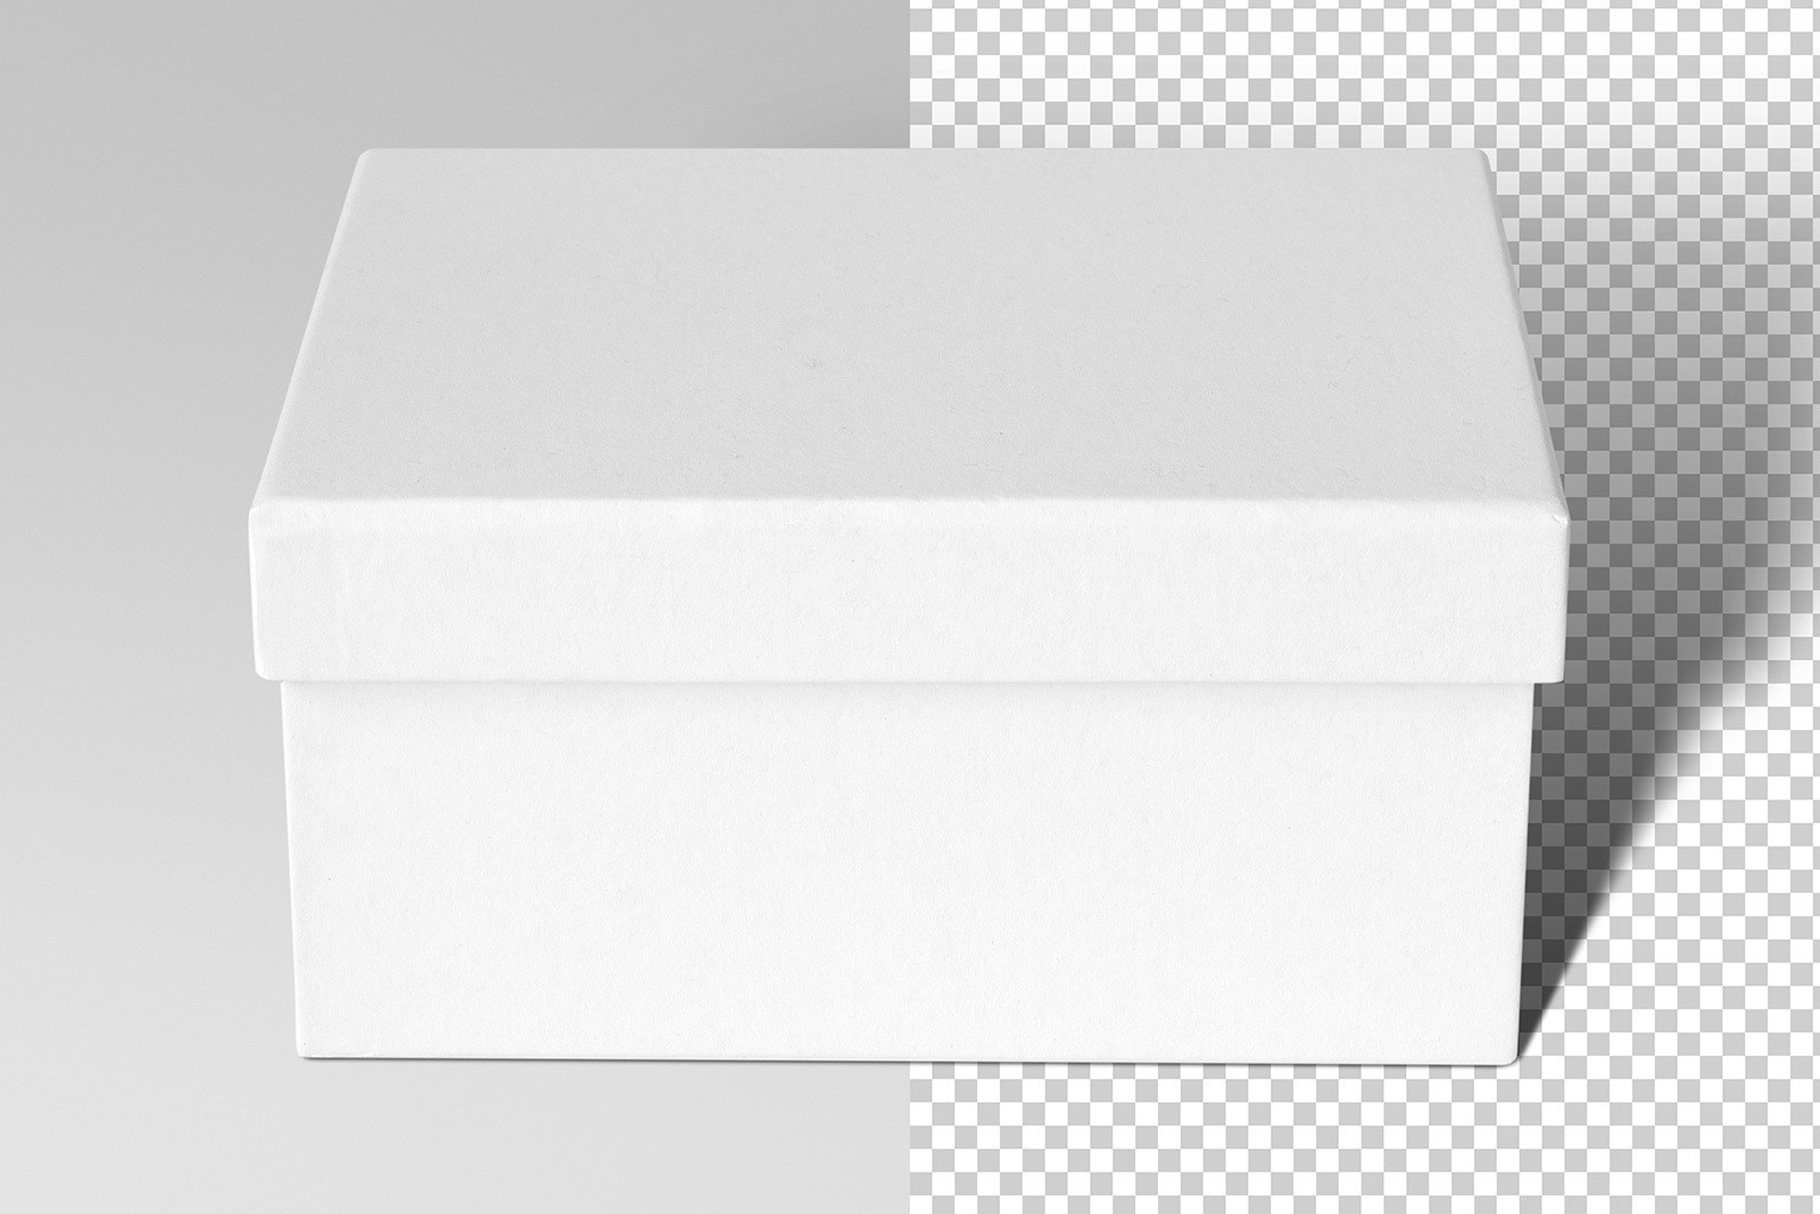 993 天地盖礼盒鞋盒包装盒PSD样机Paper Mache Craft Box Mockups